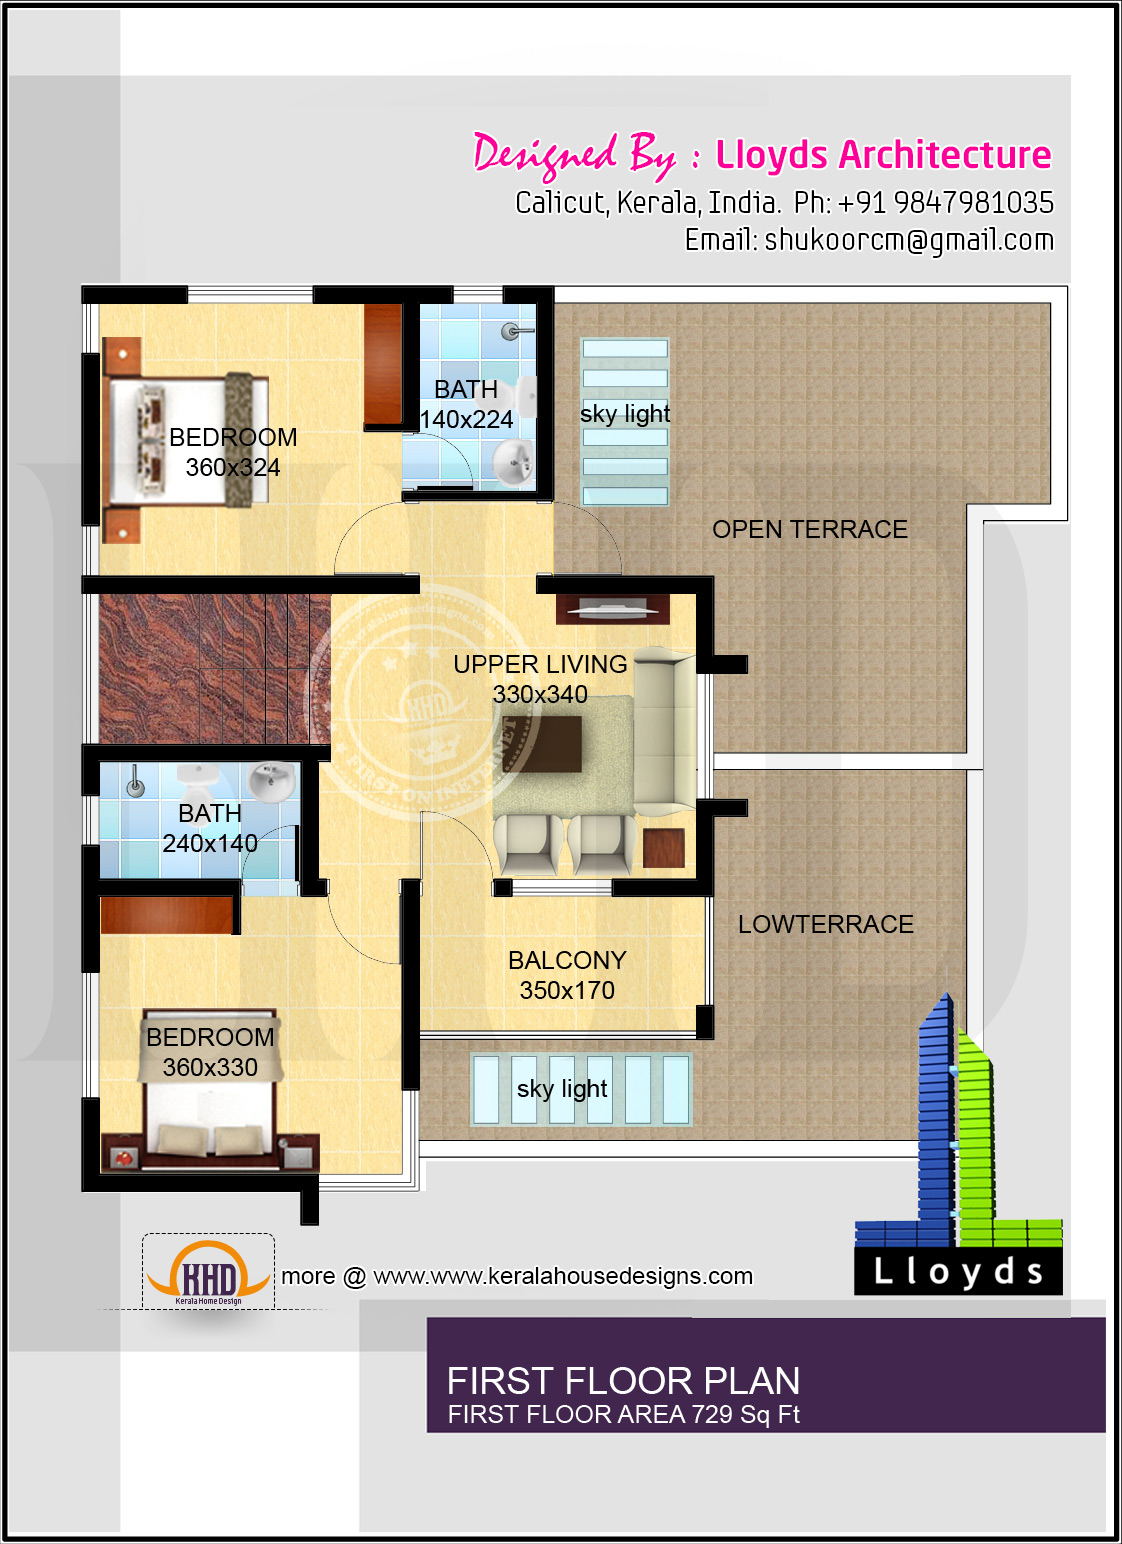 Apartment Floor Plans In India